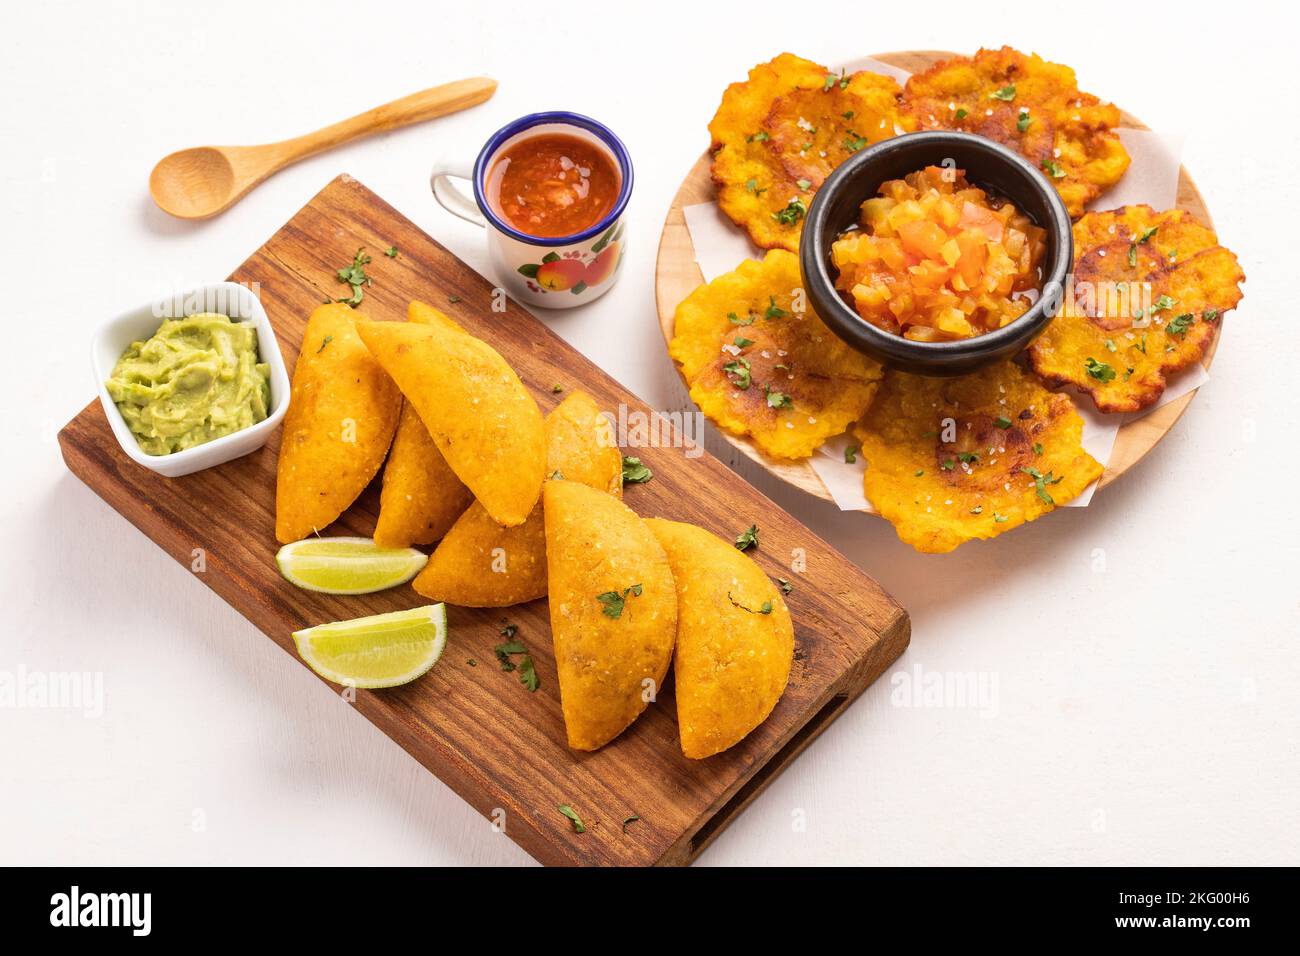 Empanadas et patacon - cuisine colombienne typique Banque D'Images